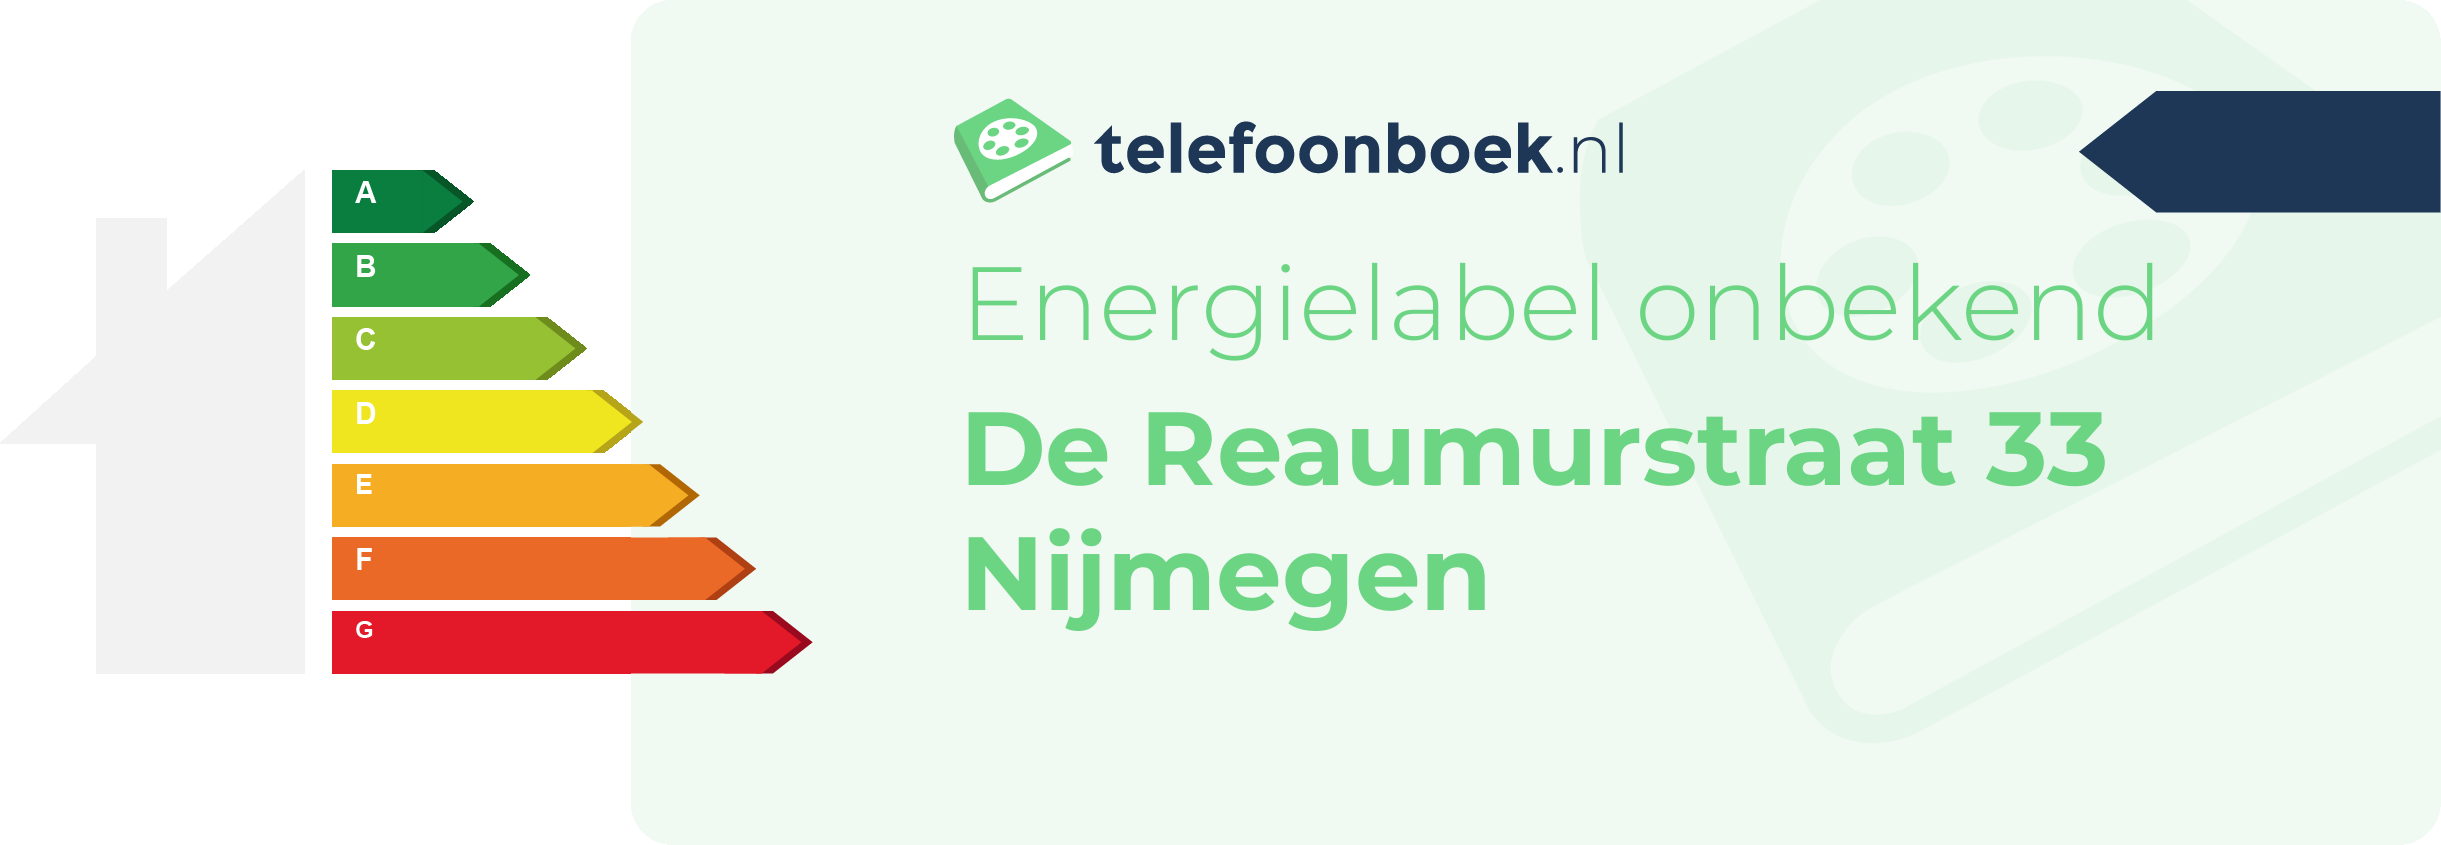 Energielabel De Reaumurstraat 33 Nijmegen